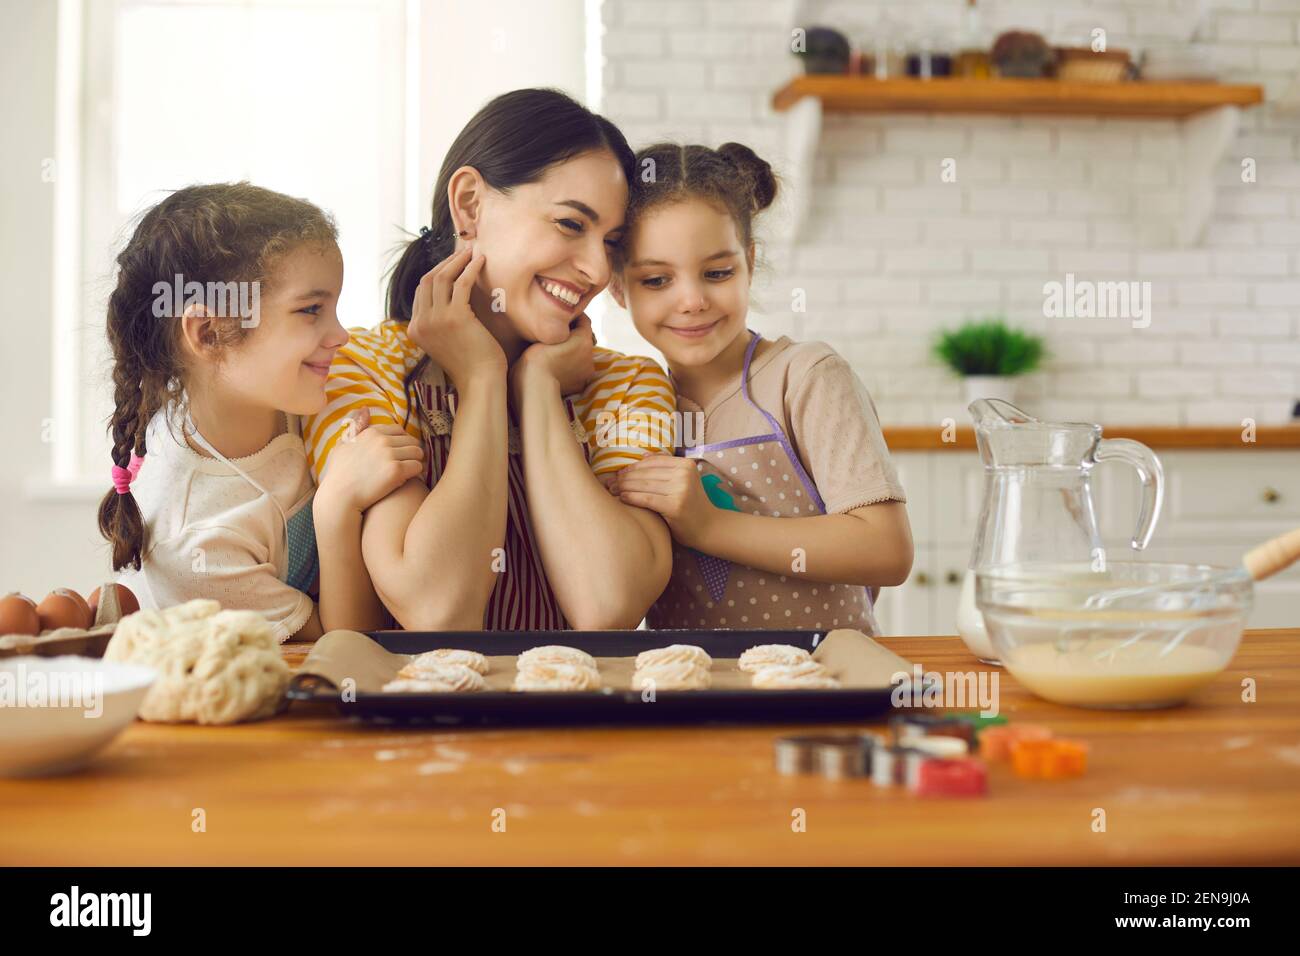 Kochen, Backen, Zeit mit Kindern genießen Konzept Stockfotografie - Alamy